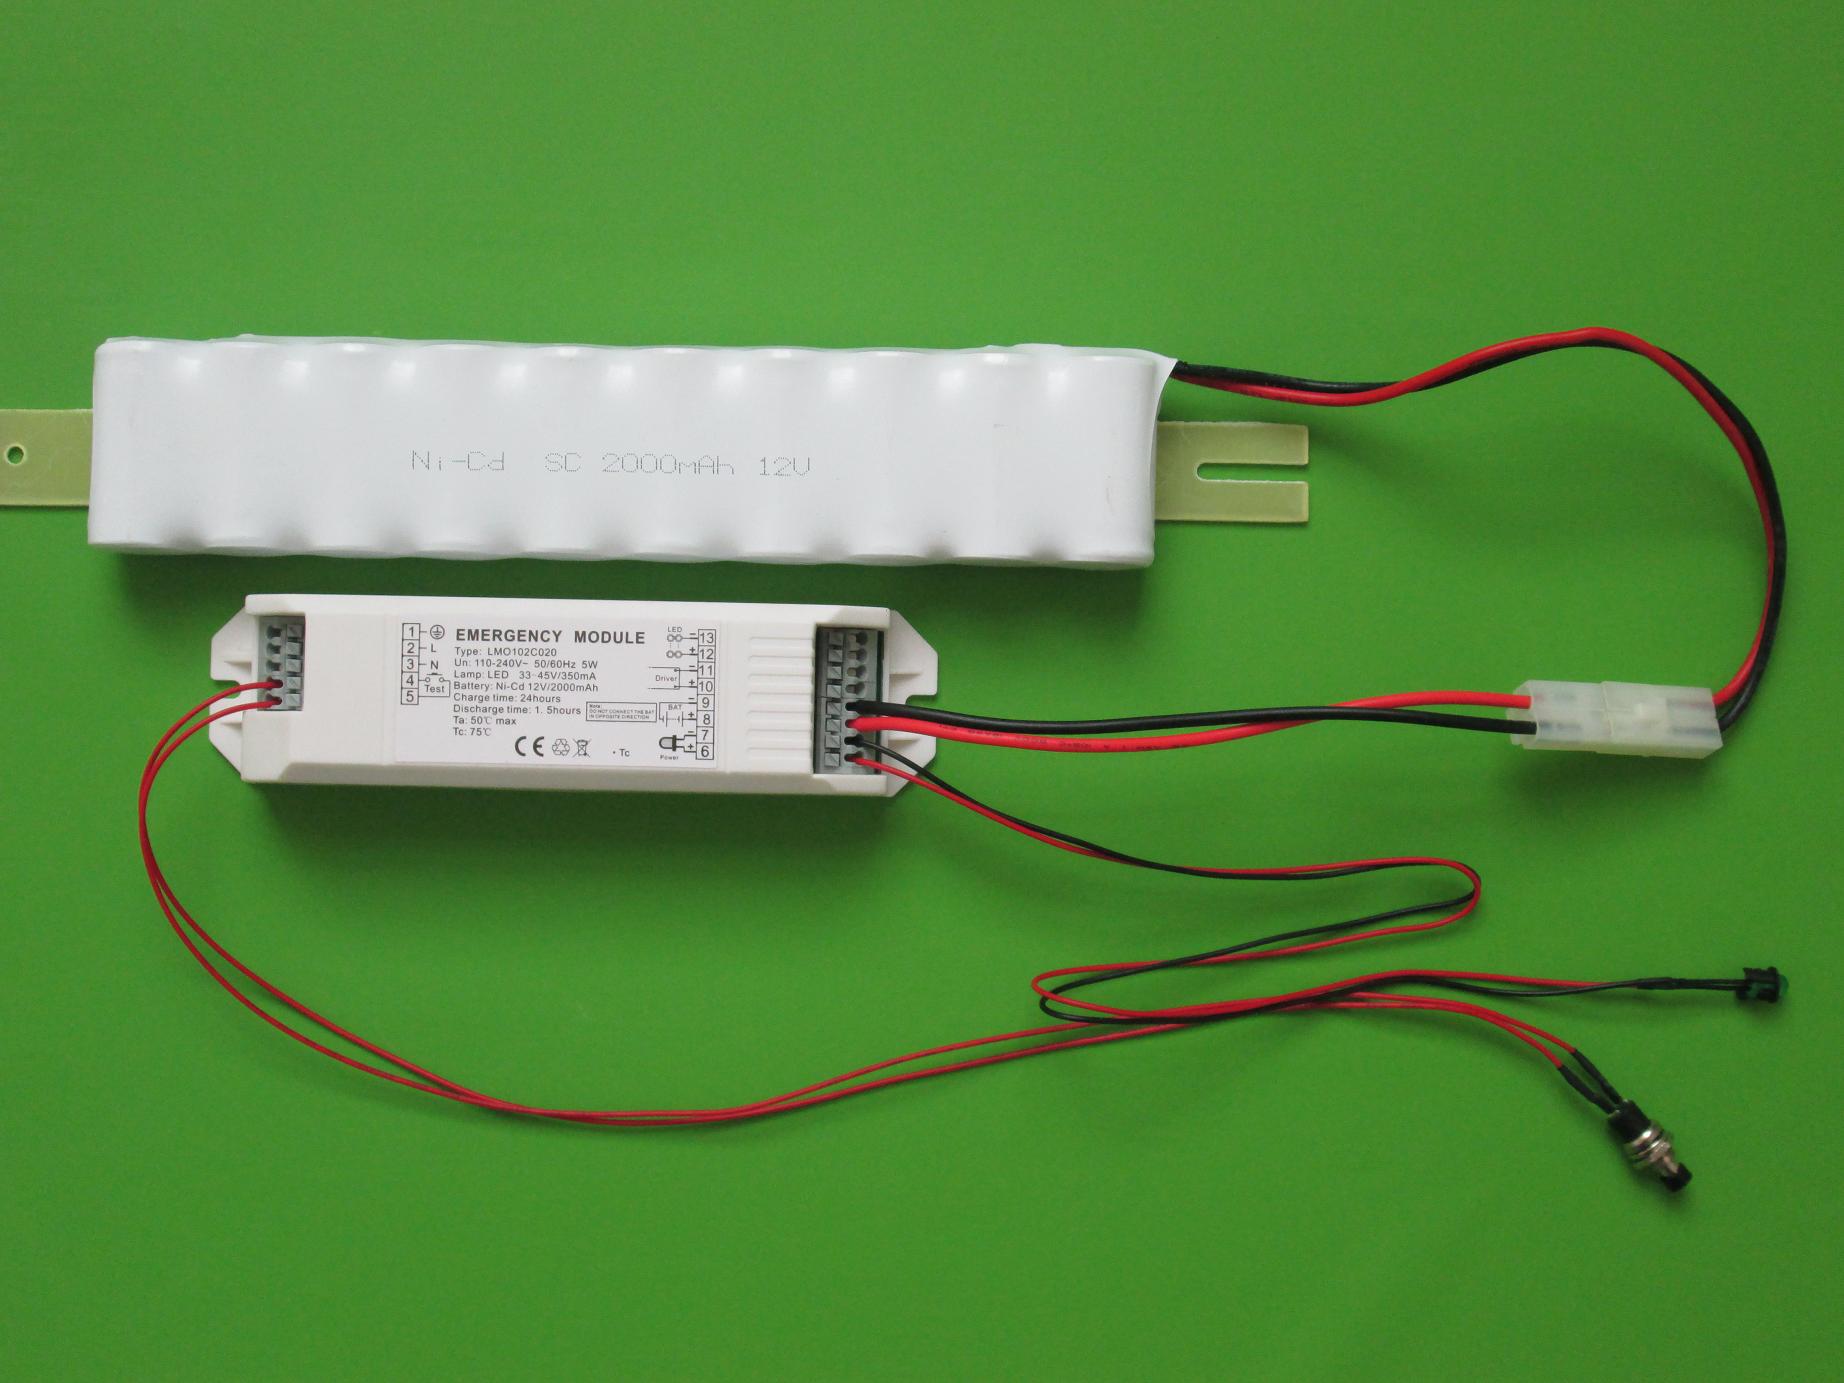 Inverter kit for emergency light, suitable for LED Panel, tube, down lamp.